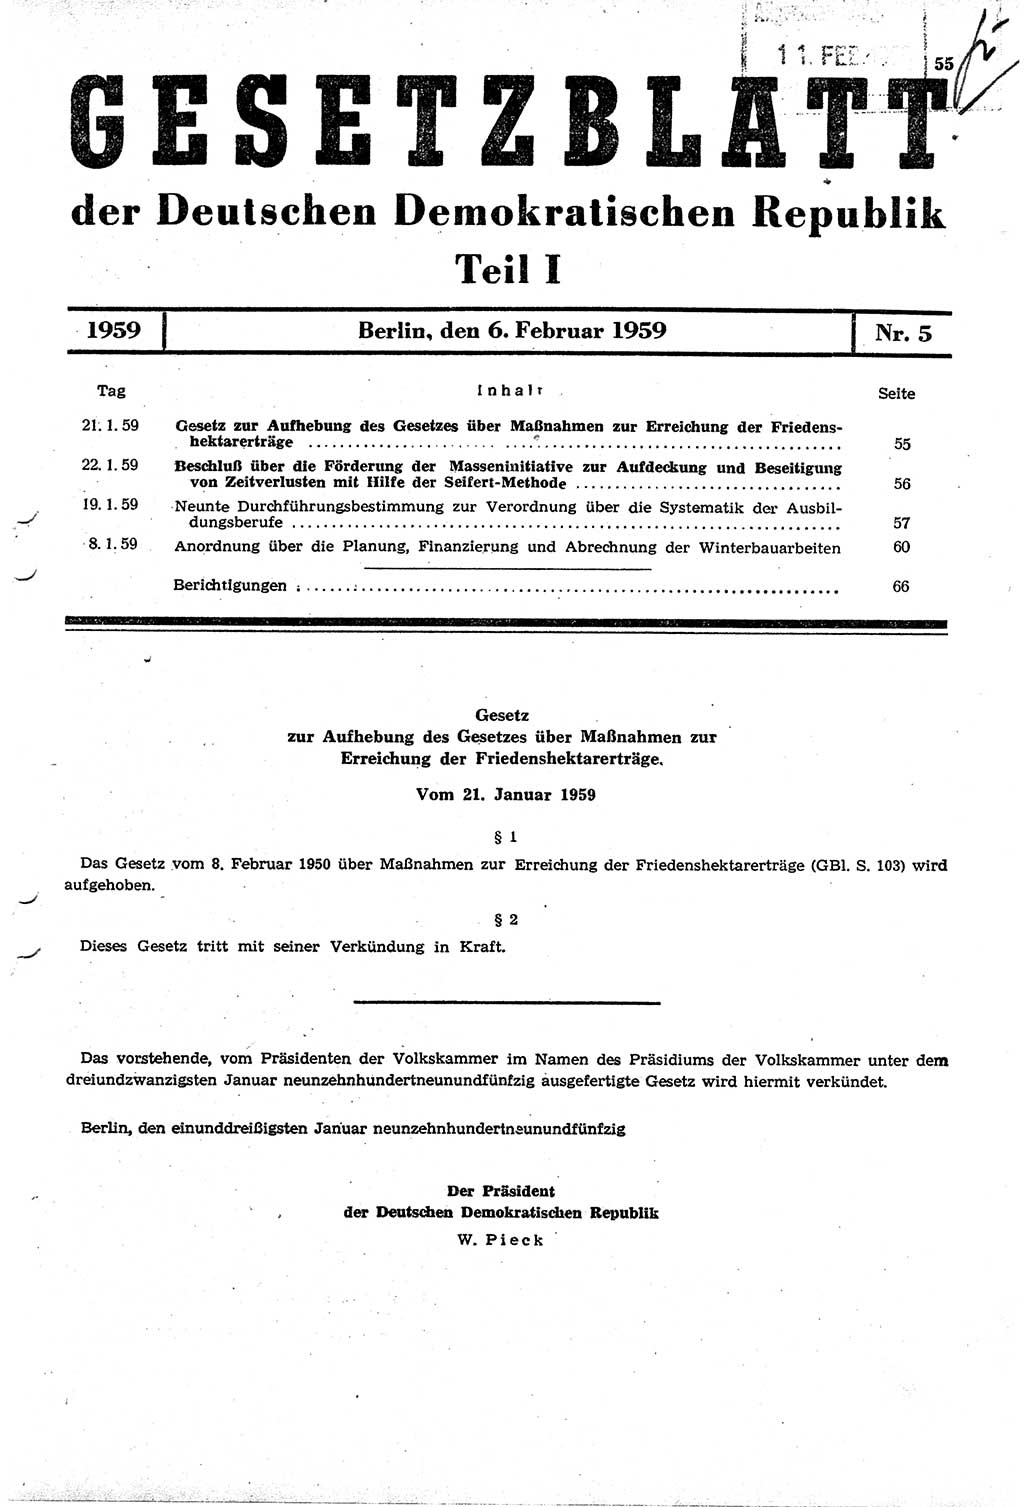 Gesetzblatt (GBl.) der Deutschen Demokratischen Republik (DDR) Teil Ⅰ 1959, Seite 55 (GBl. DDR Ⅰ 1959, S. 55)